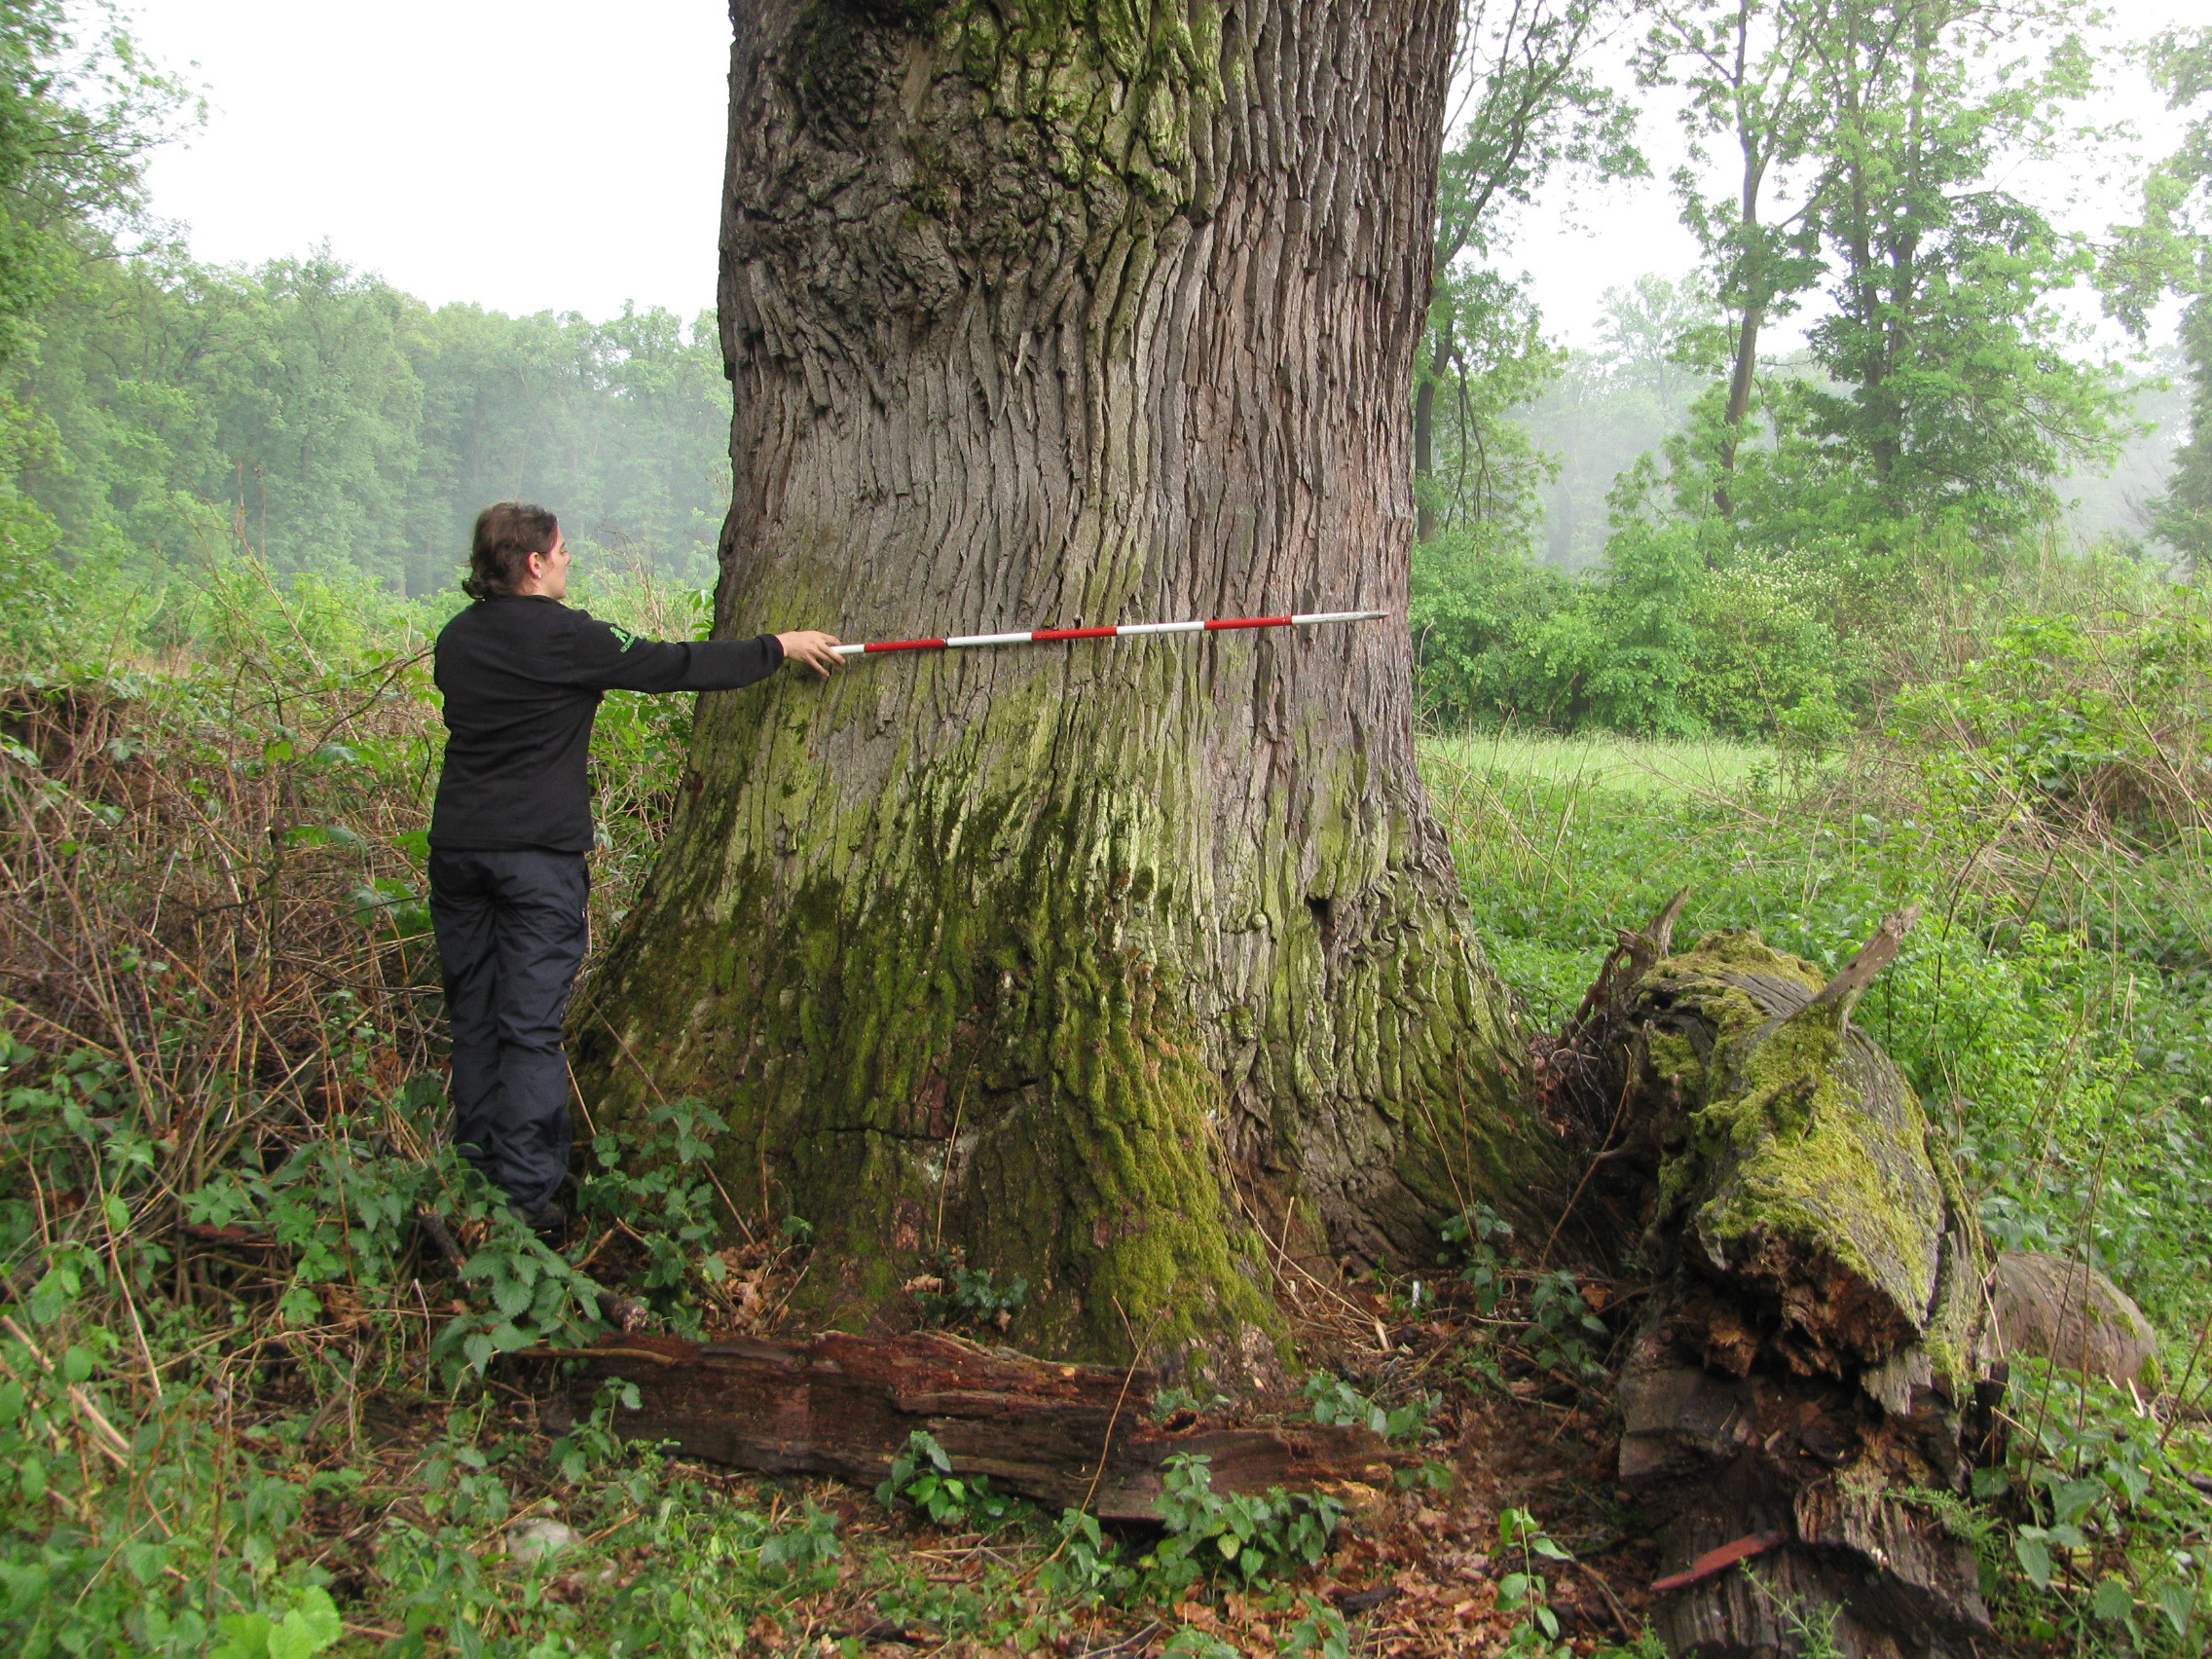 Silné biotopové stromy ponechávané na porostních okrajích jsou páteří biodiverzity lesní krajiny. Foto Radek Bače